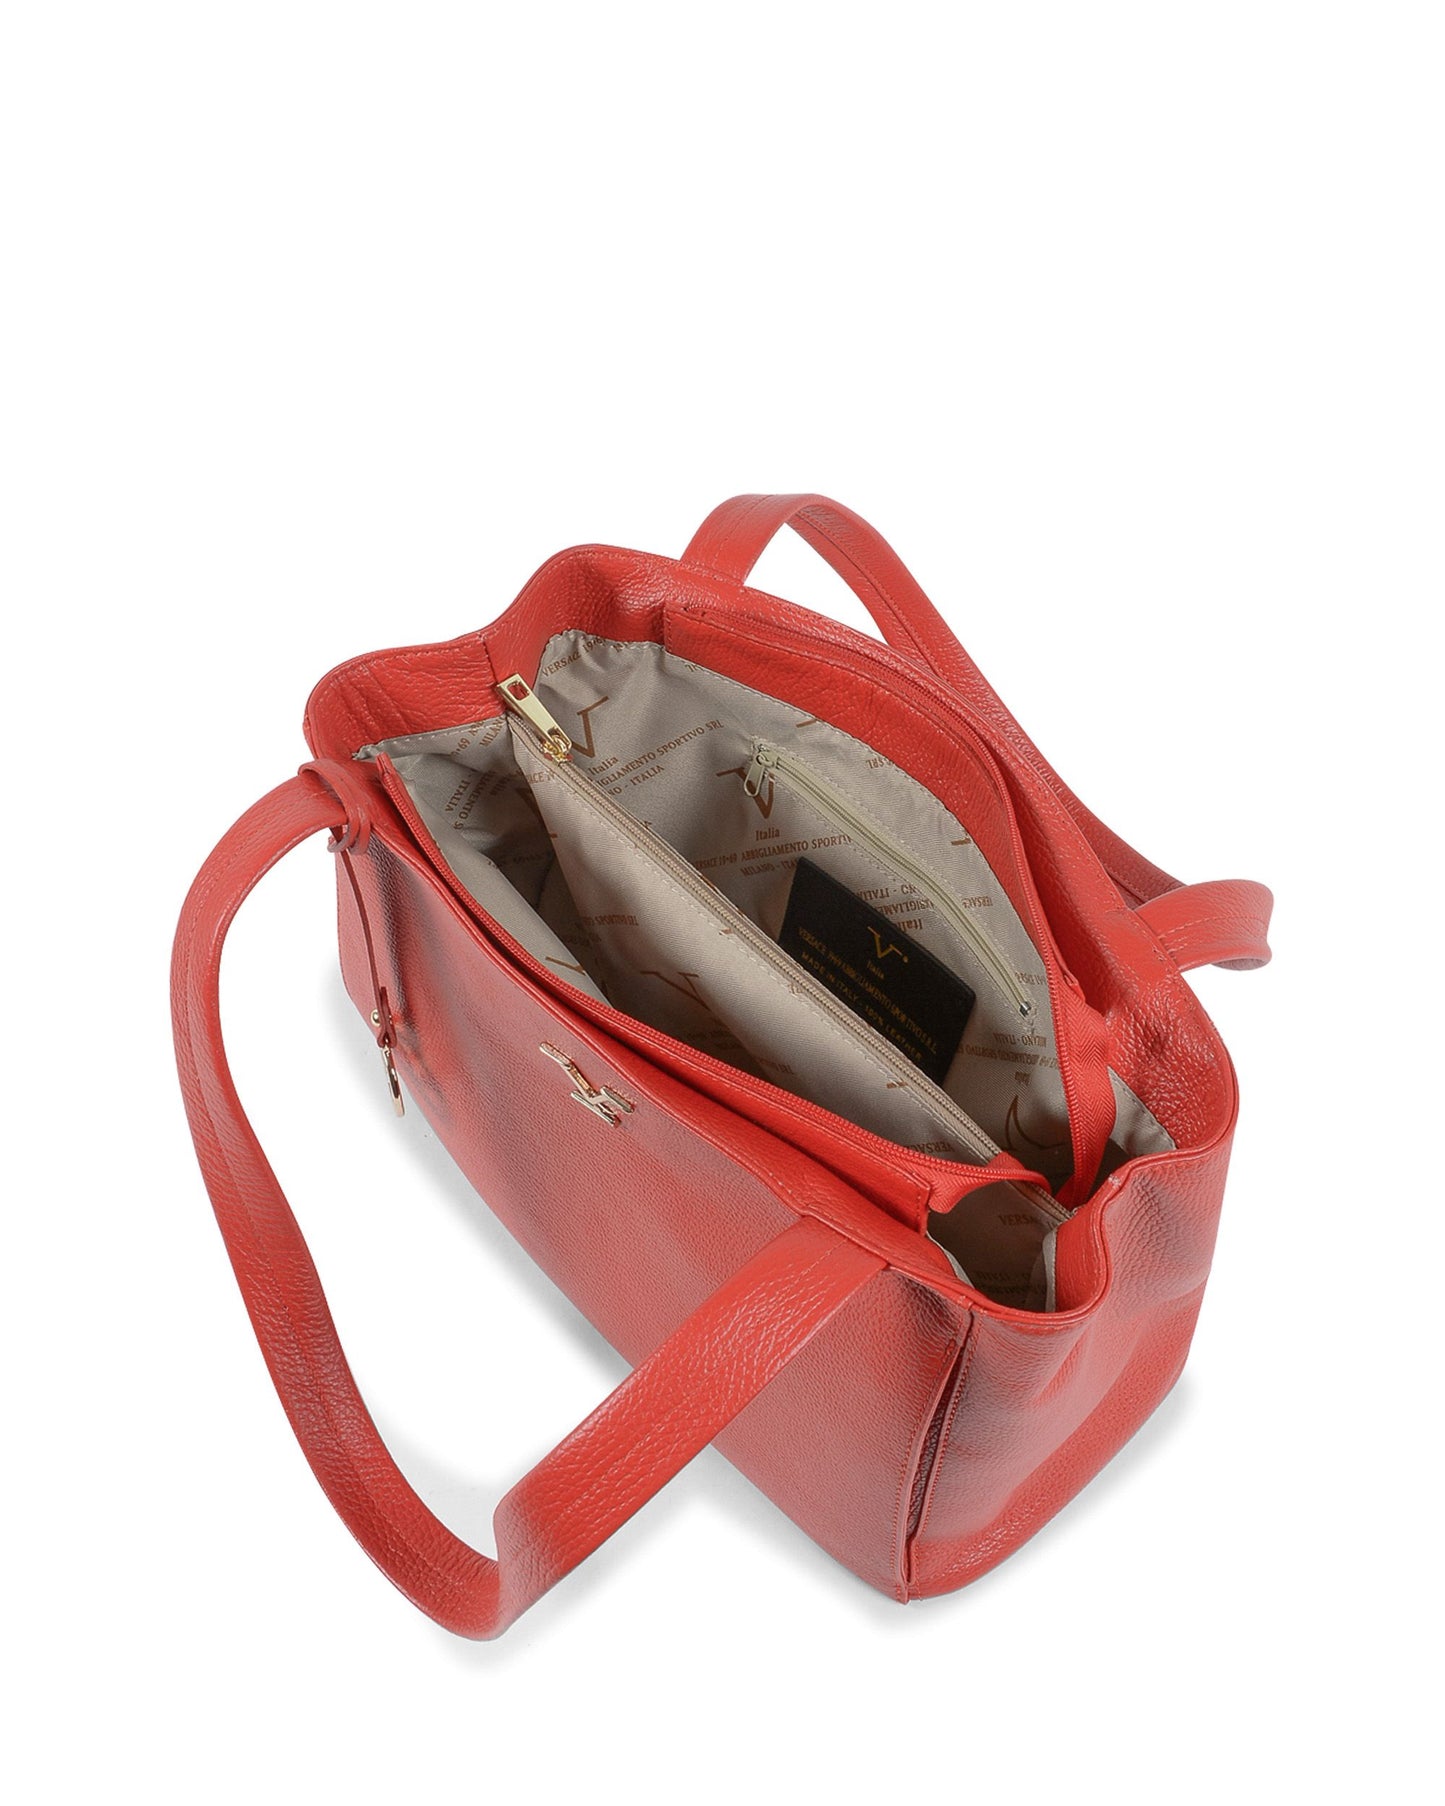 V Italia Womens Handbag Red VE0792 ROSSO